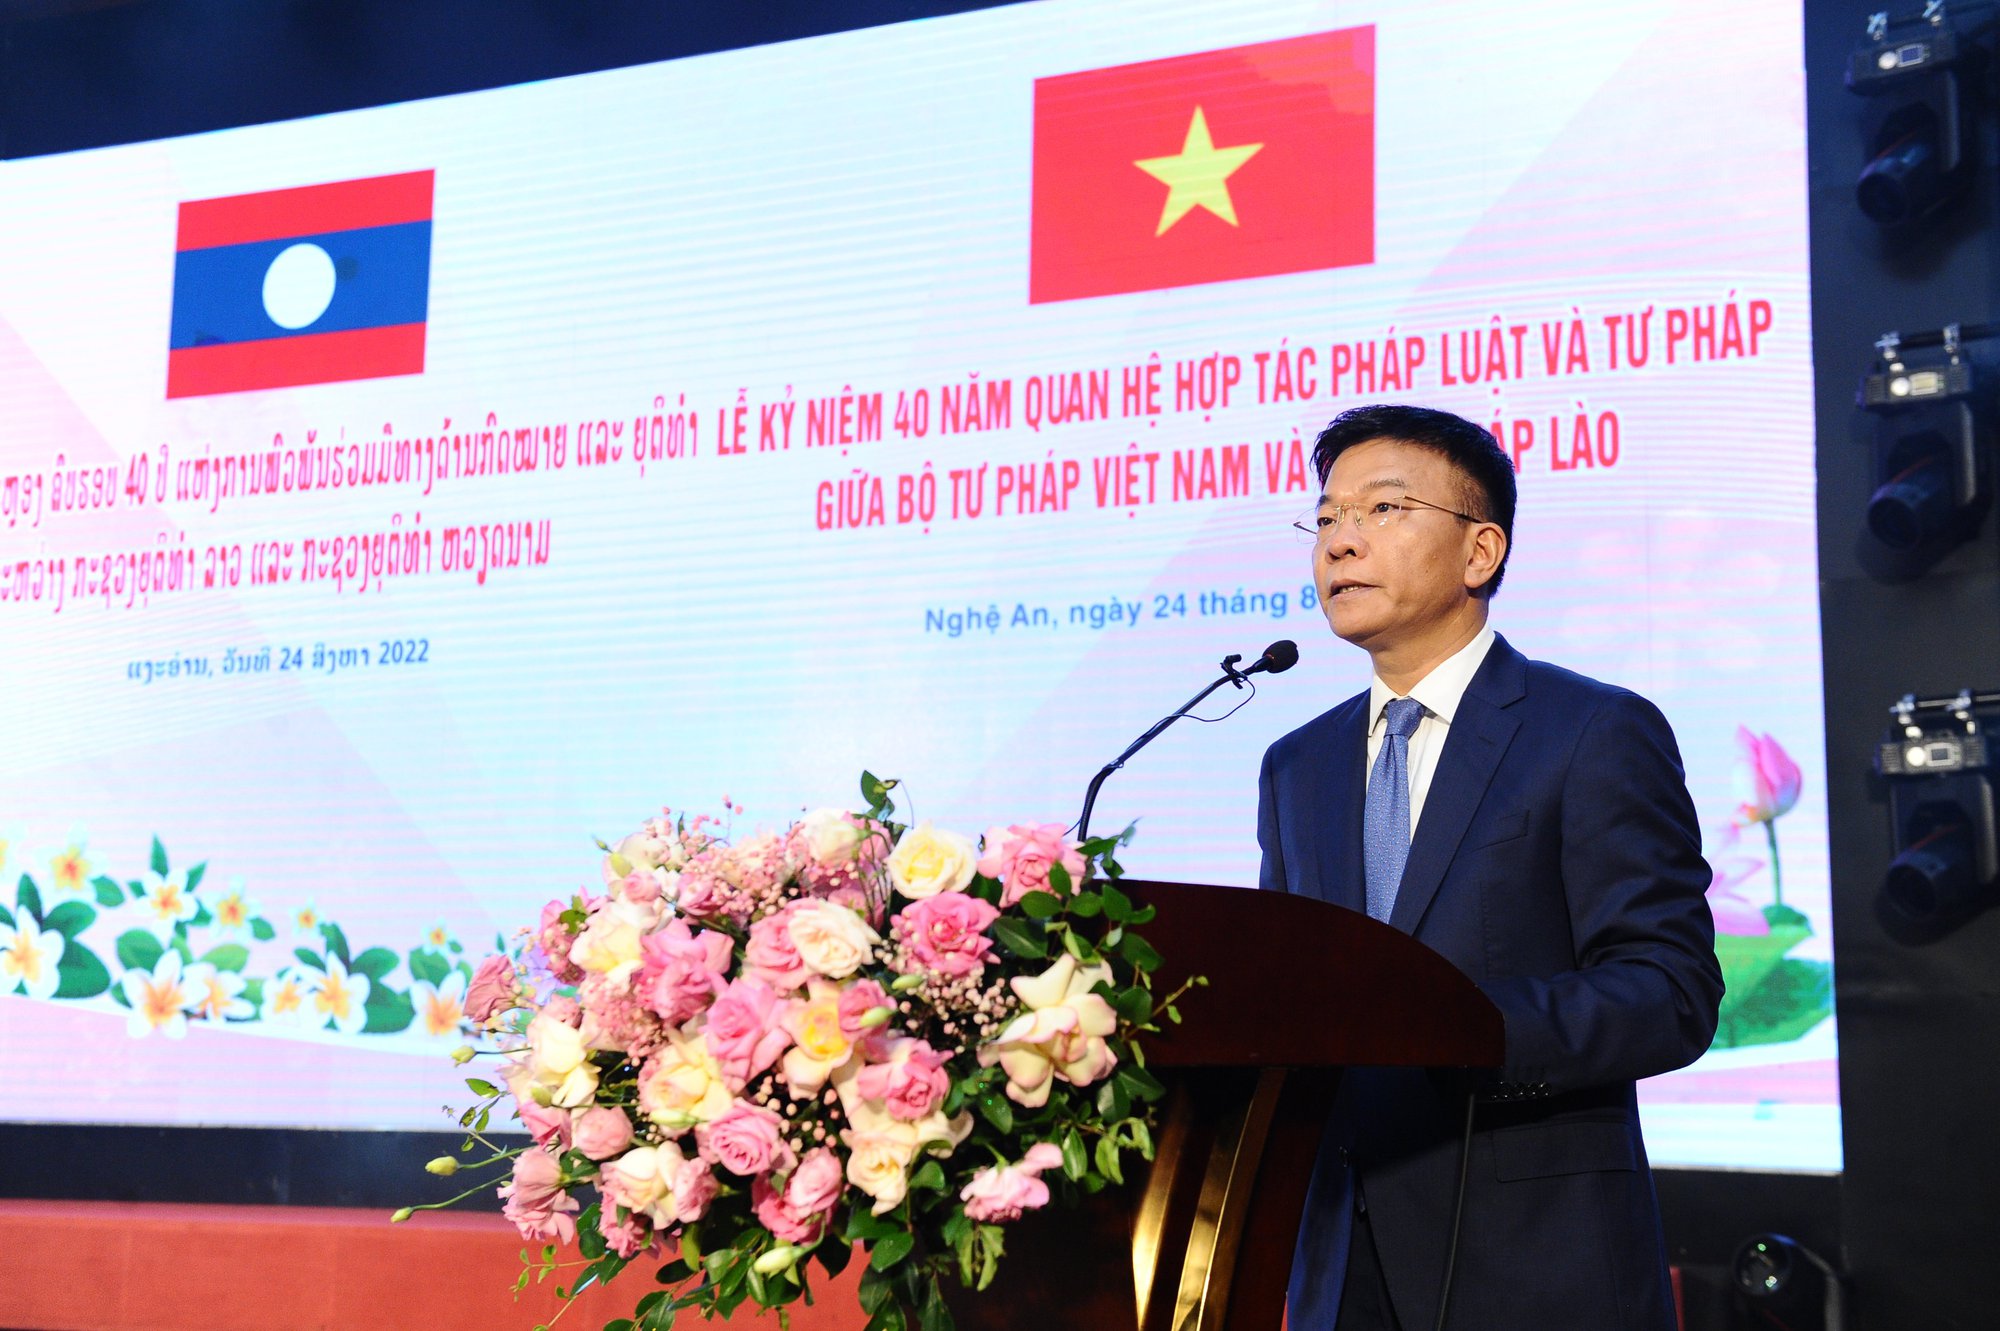 40 năm hợp tác pháp luật và tư pháp giữa Bộ Tư pháp Việt Nam và Bộ Tư pháp Lào - Ảnh 2.